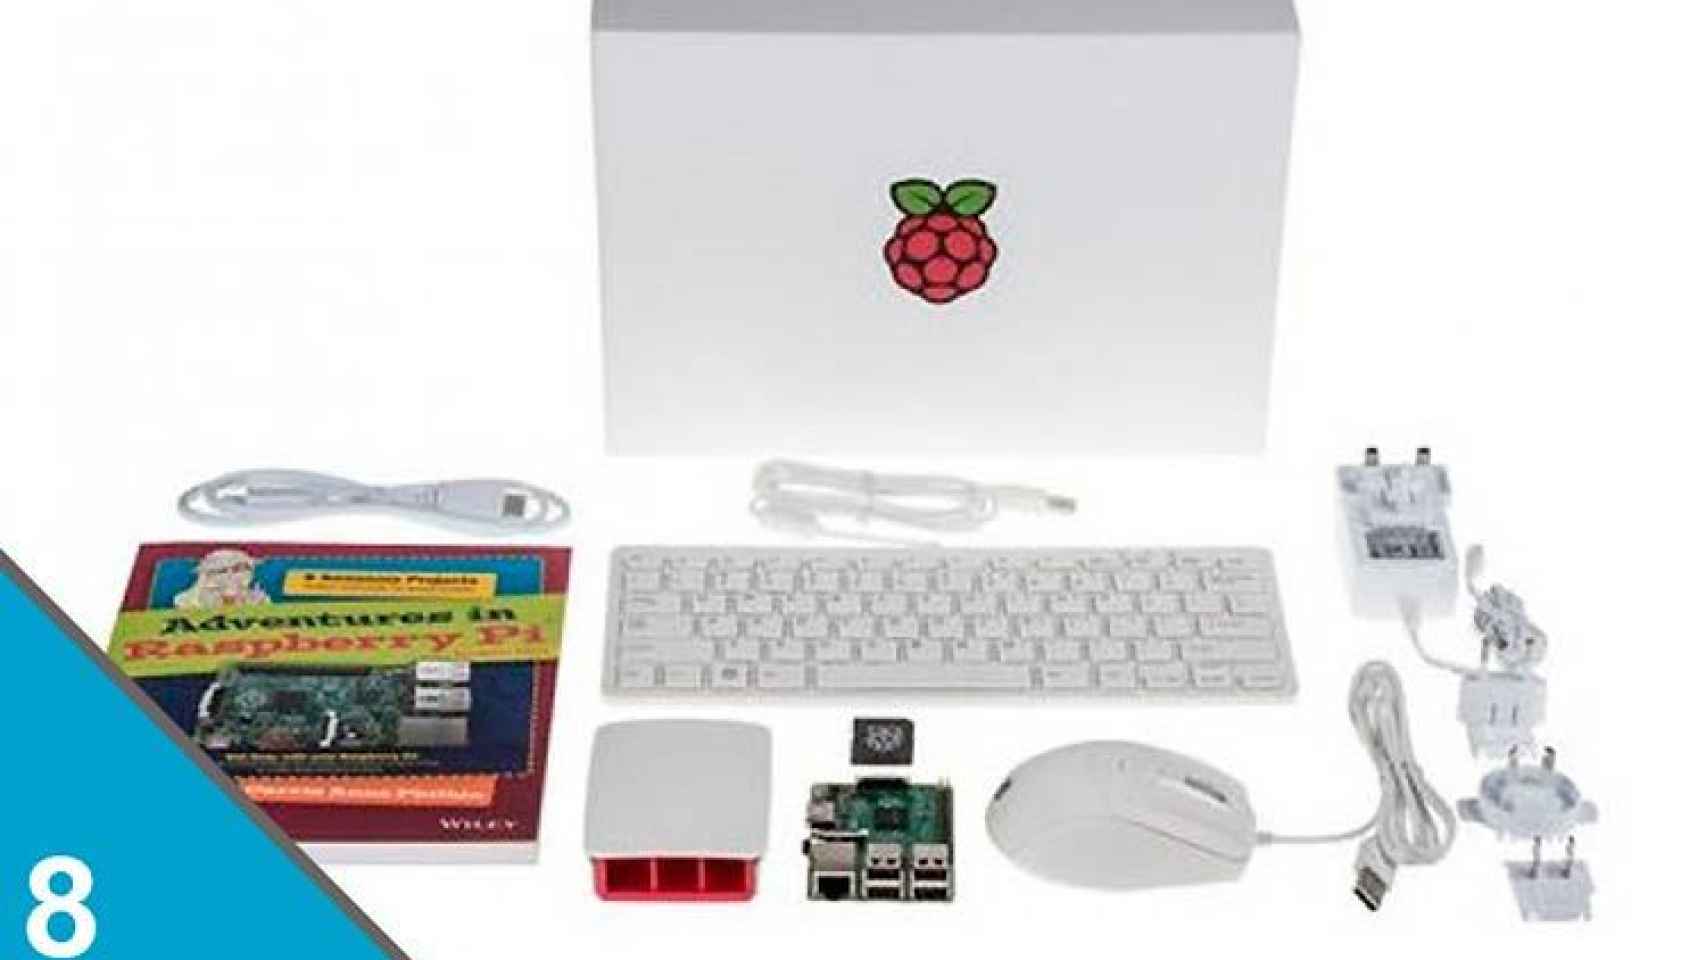 Móntate una consola retro, o lo que quieras, con una Raspberry Pi 3